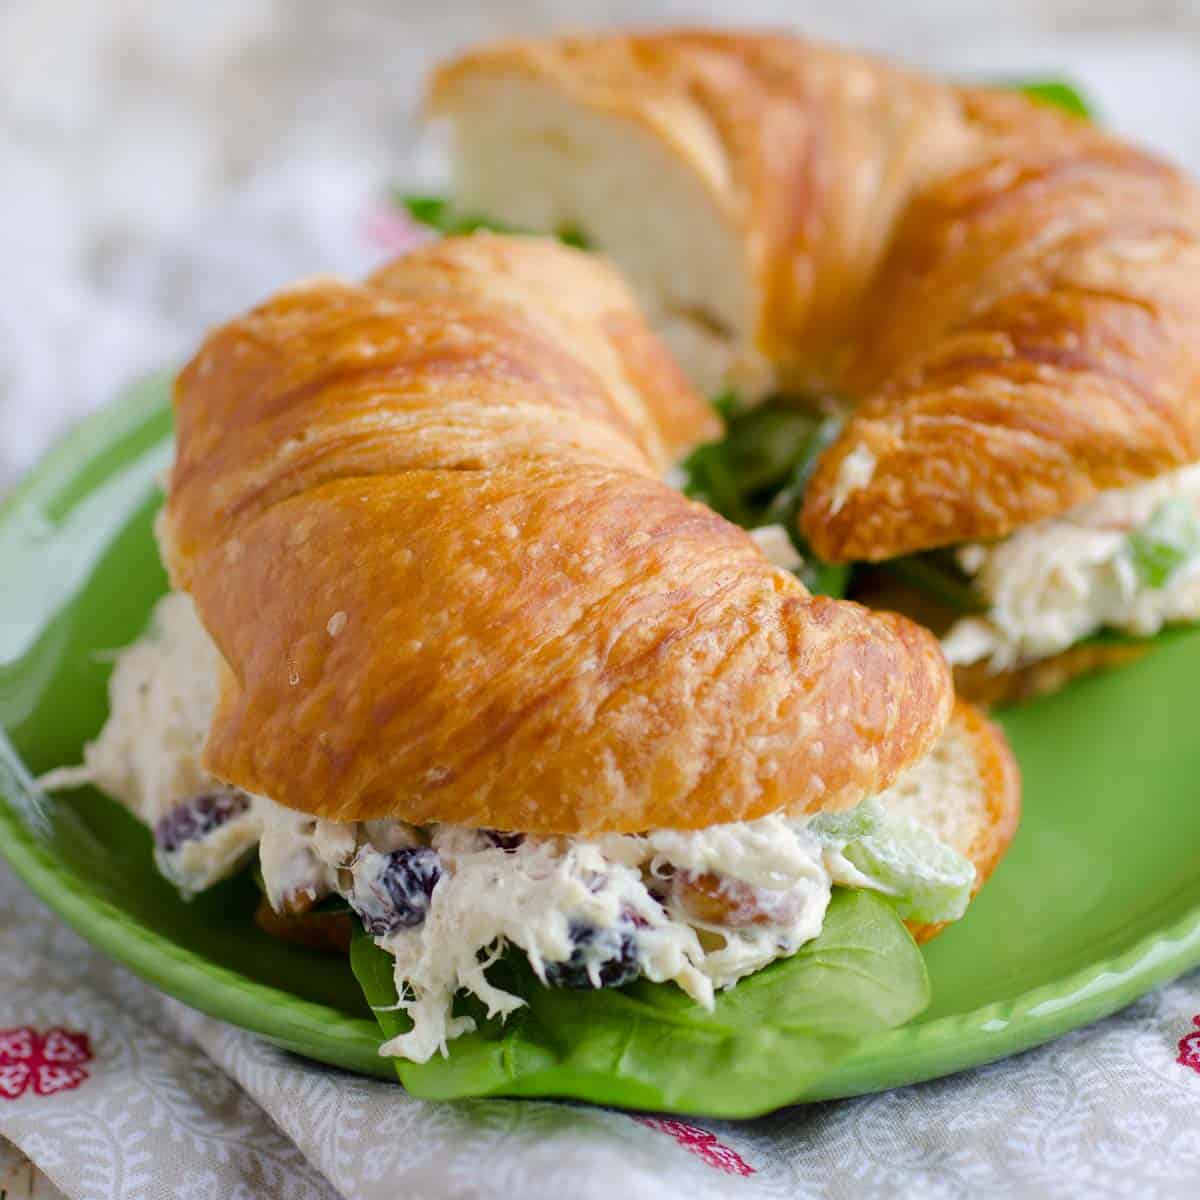 chicken salad sandwich on a croissant